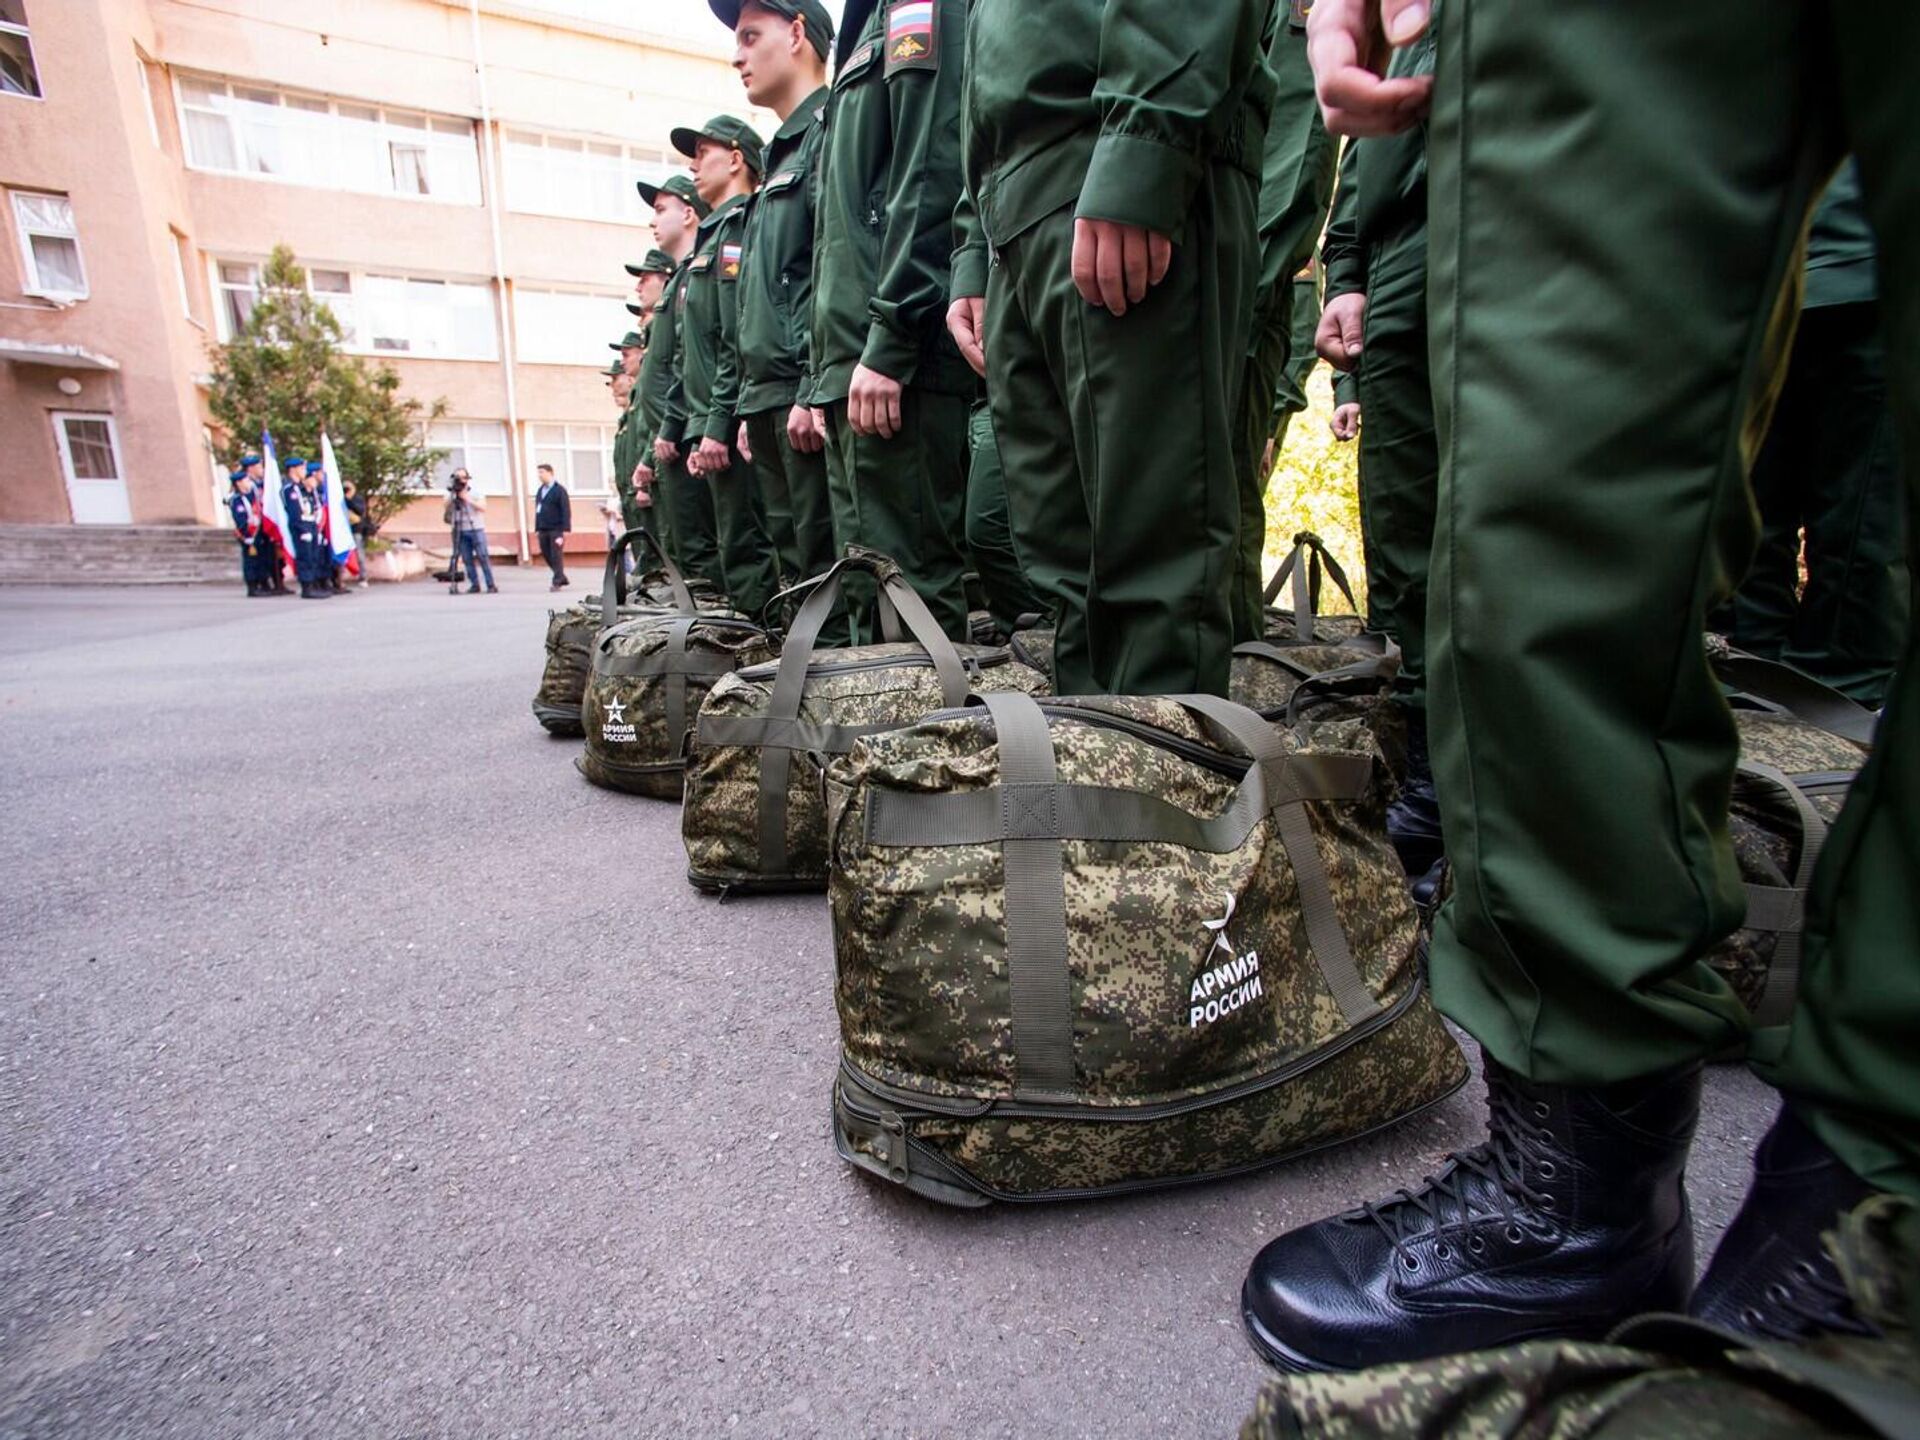 С 1 апреля в Российской Федерации начался весенний призыв граждан на военную службу.